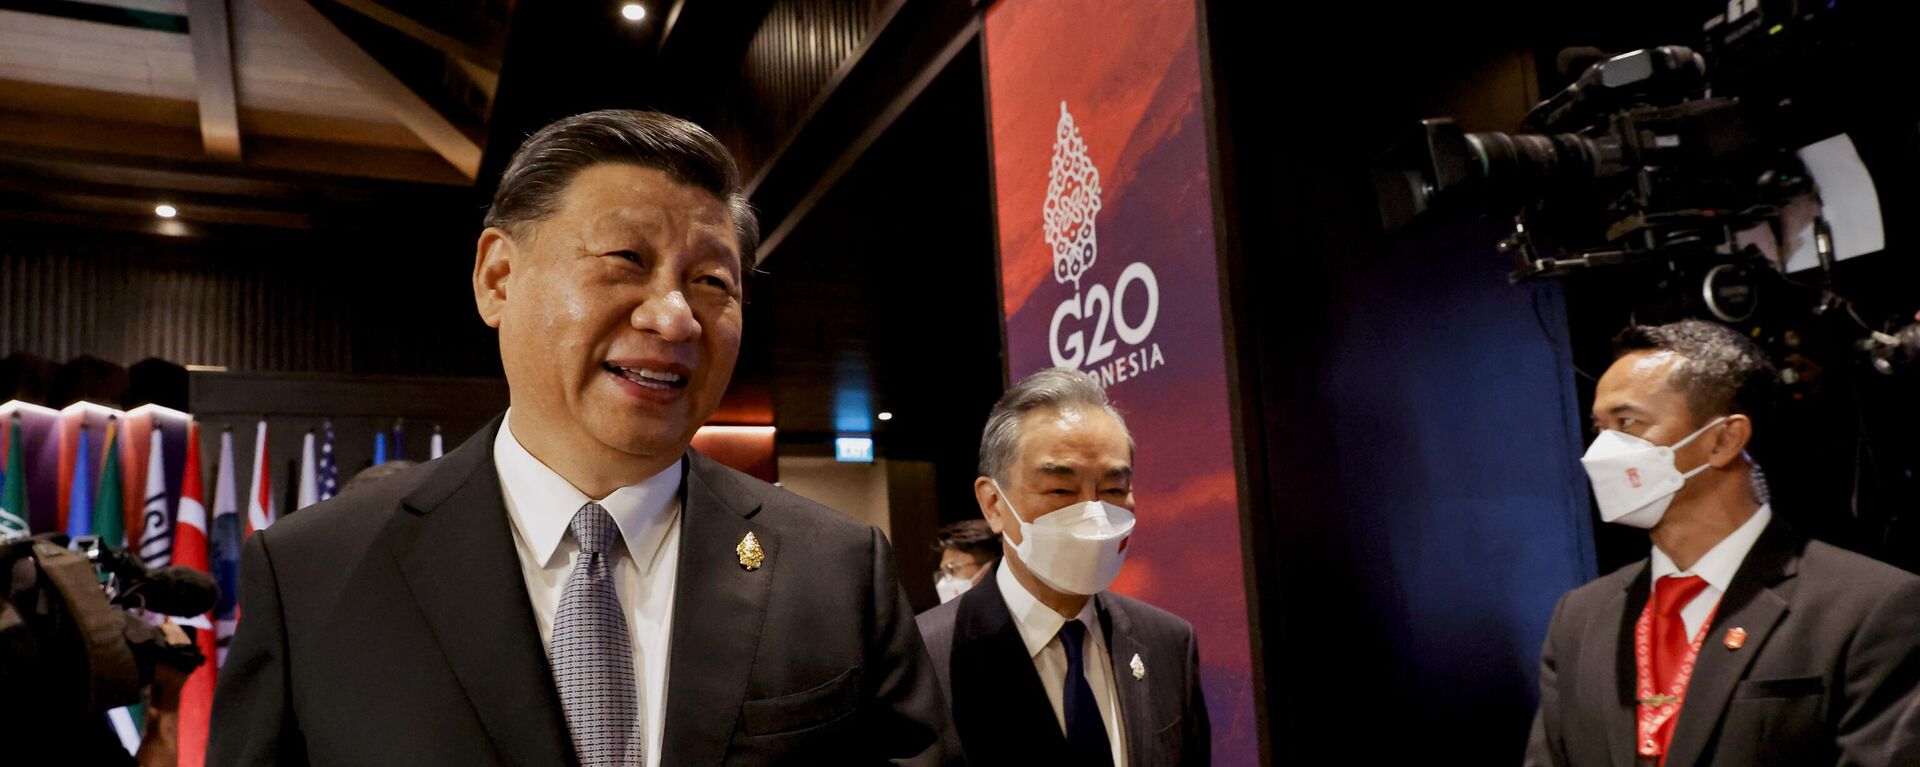 الرئيس الصيني شي جين بينغ يمشي أثناء حضوره جلسة في قمة قادة مجموعة العشرين، في نوسا دوا، بالي، إندونيسيا 16 نوفمبر 2022. - سبوتنيك عربي, 1920, 17.01.2023